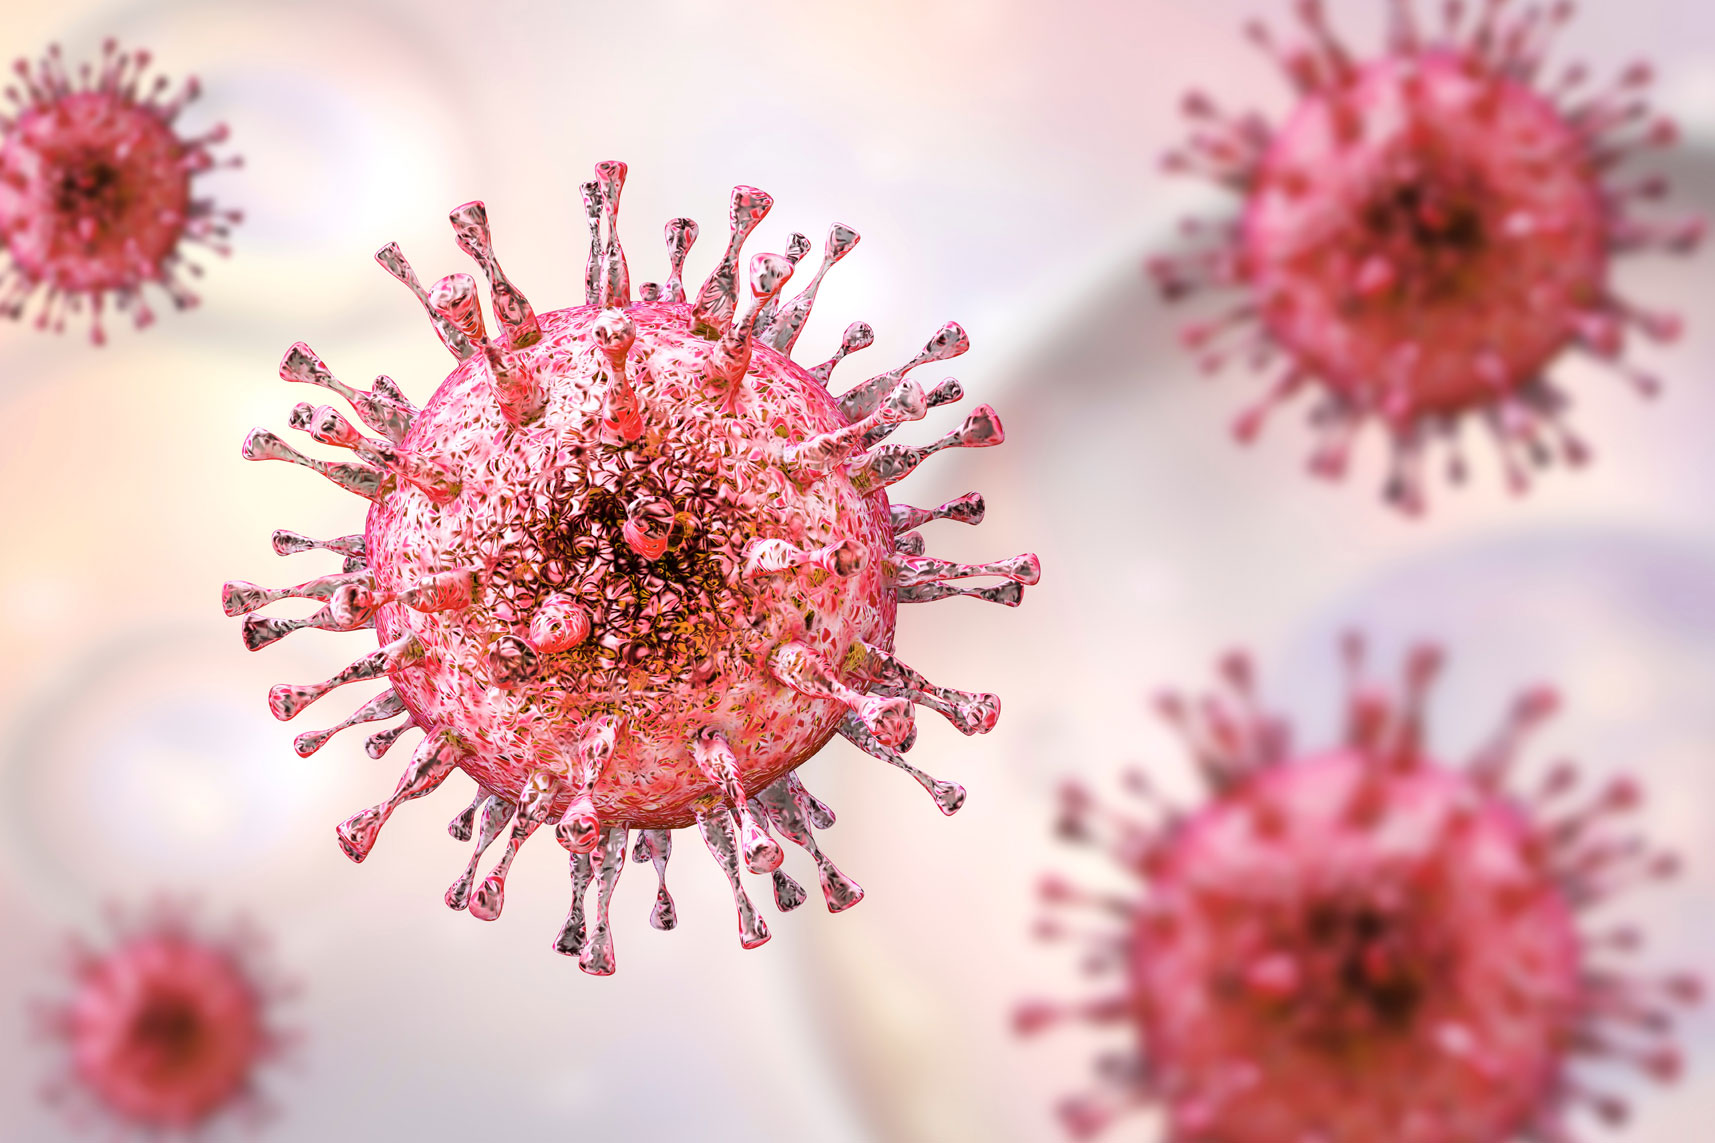 Infezione da citomegalovirus (CMV): cause, sintomi e trattamento